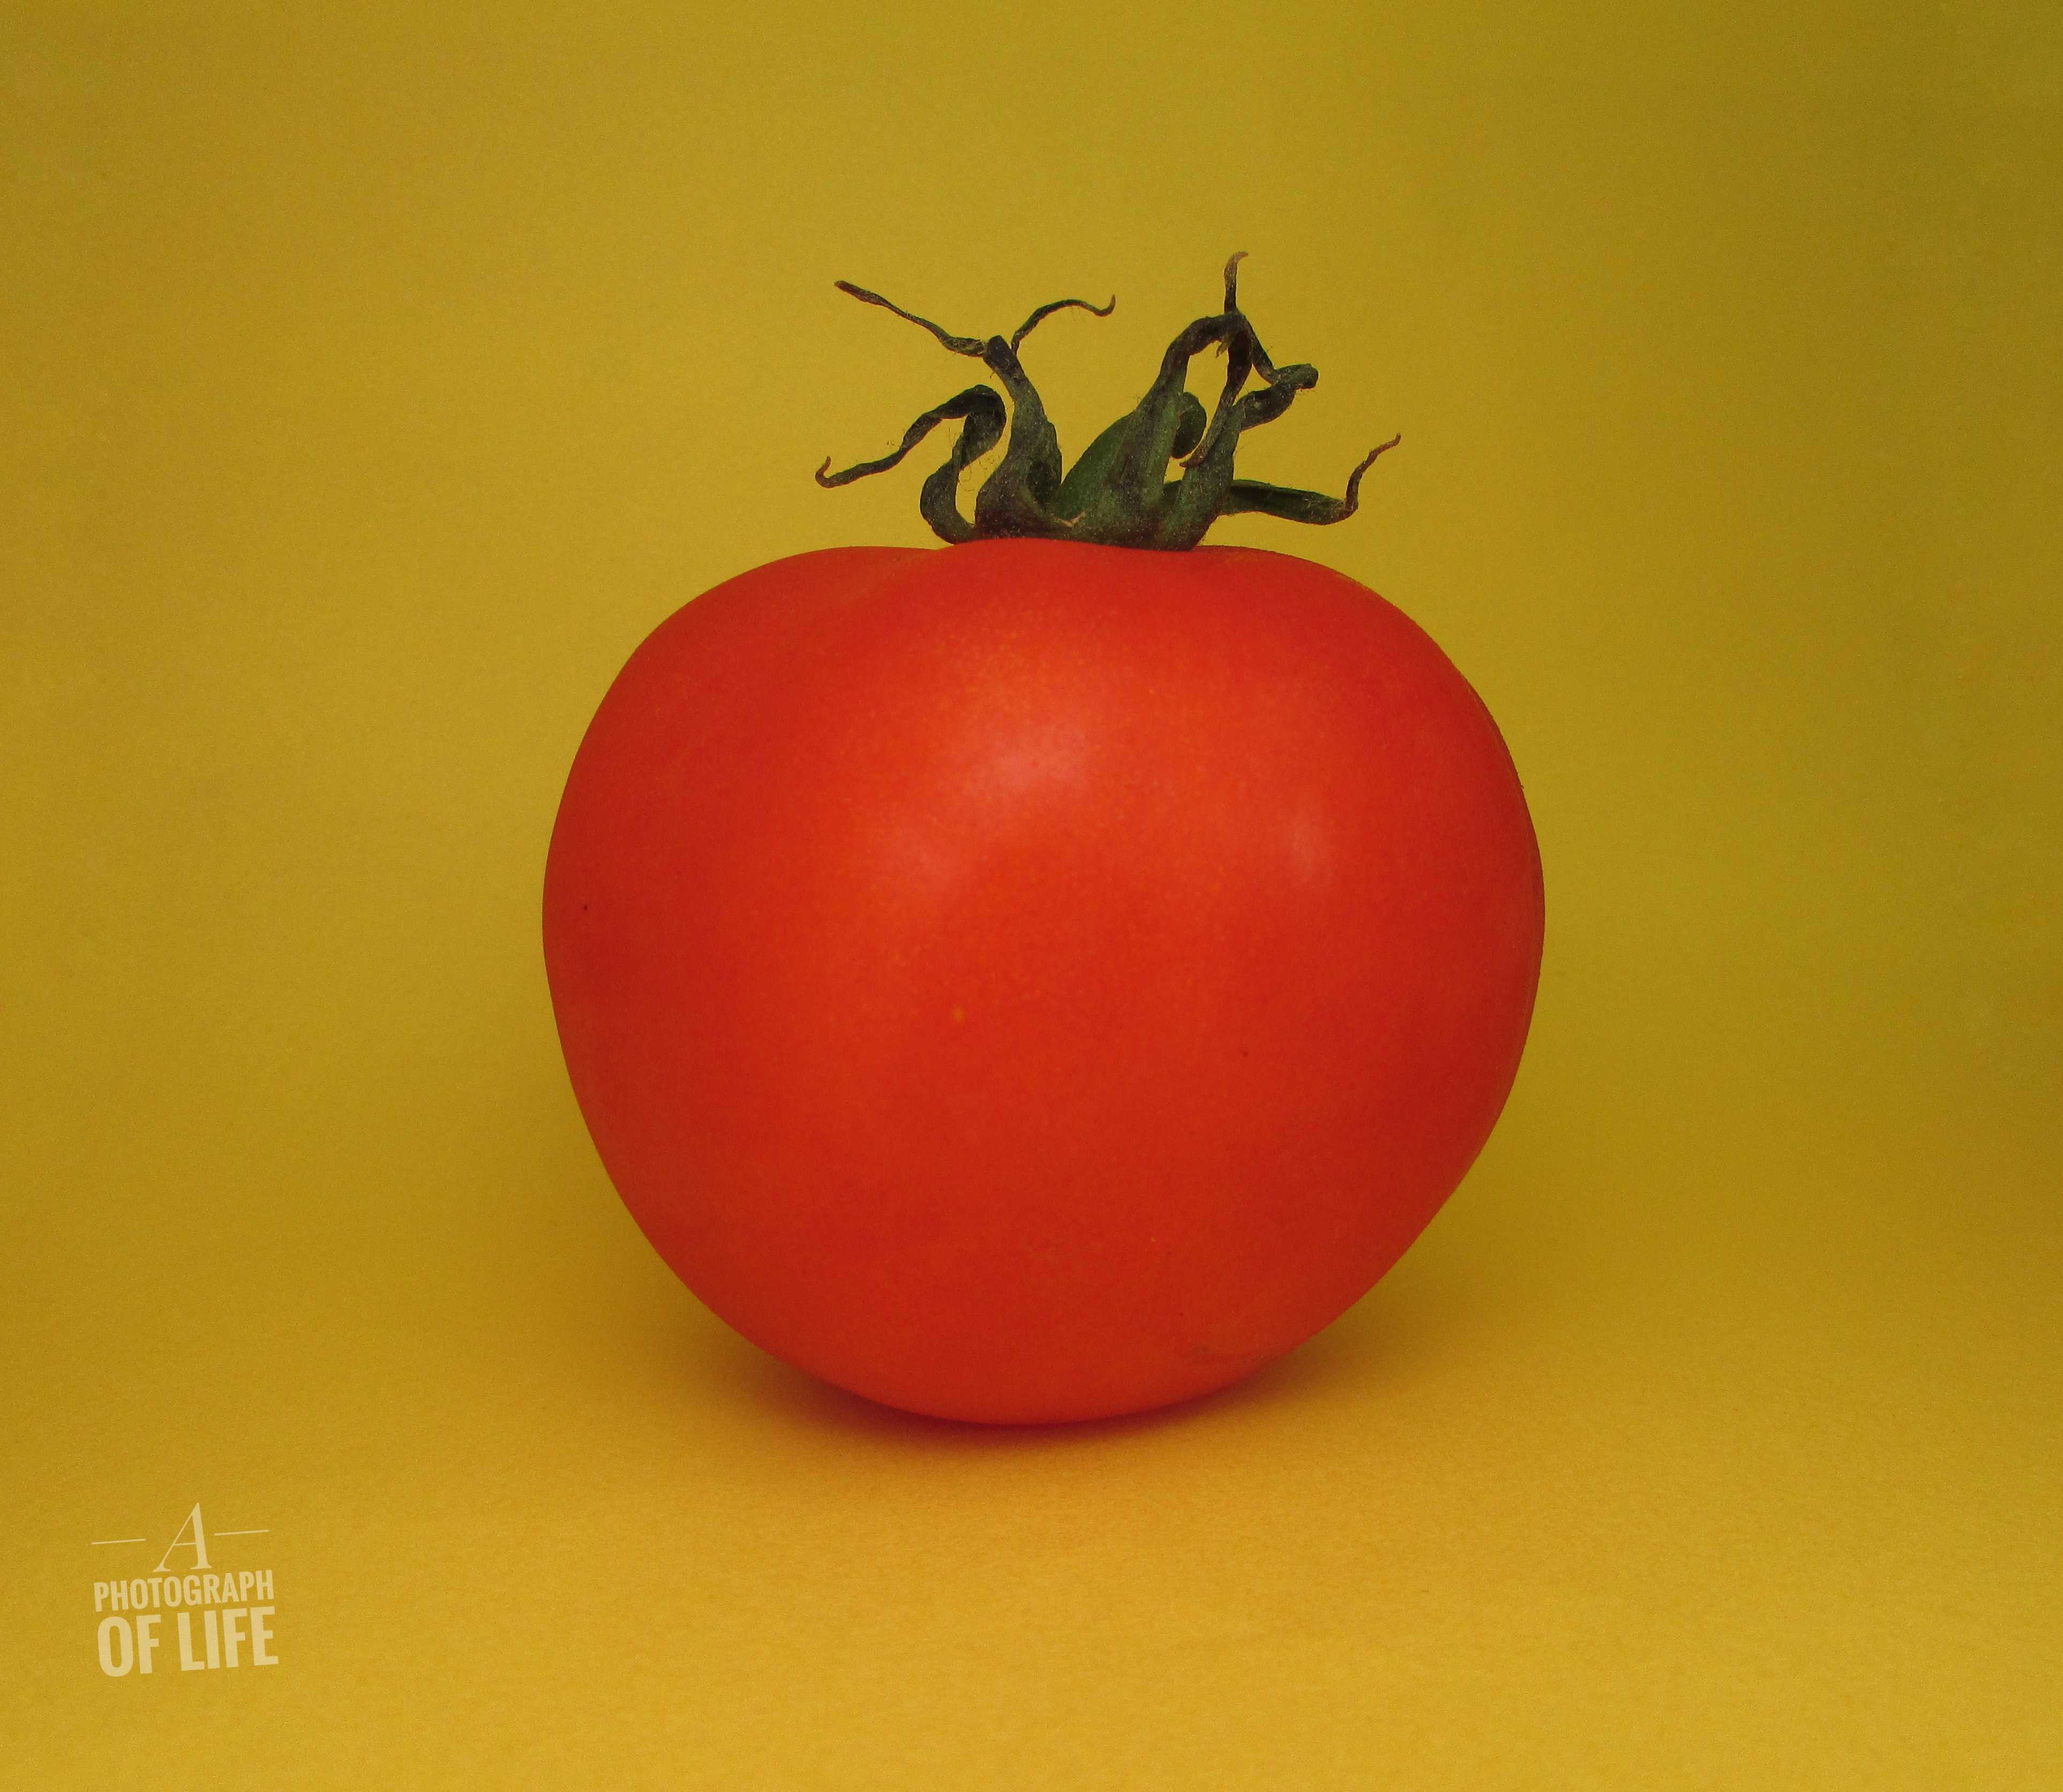 כתר העגבניה או בשם המתאים לתקופה קורונת העגבניה